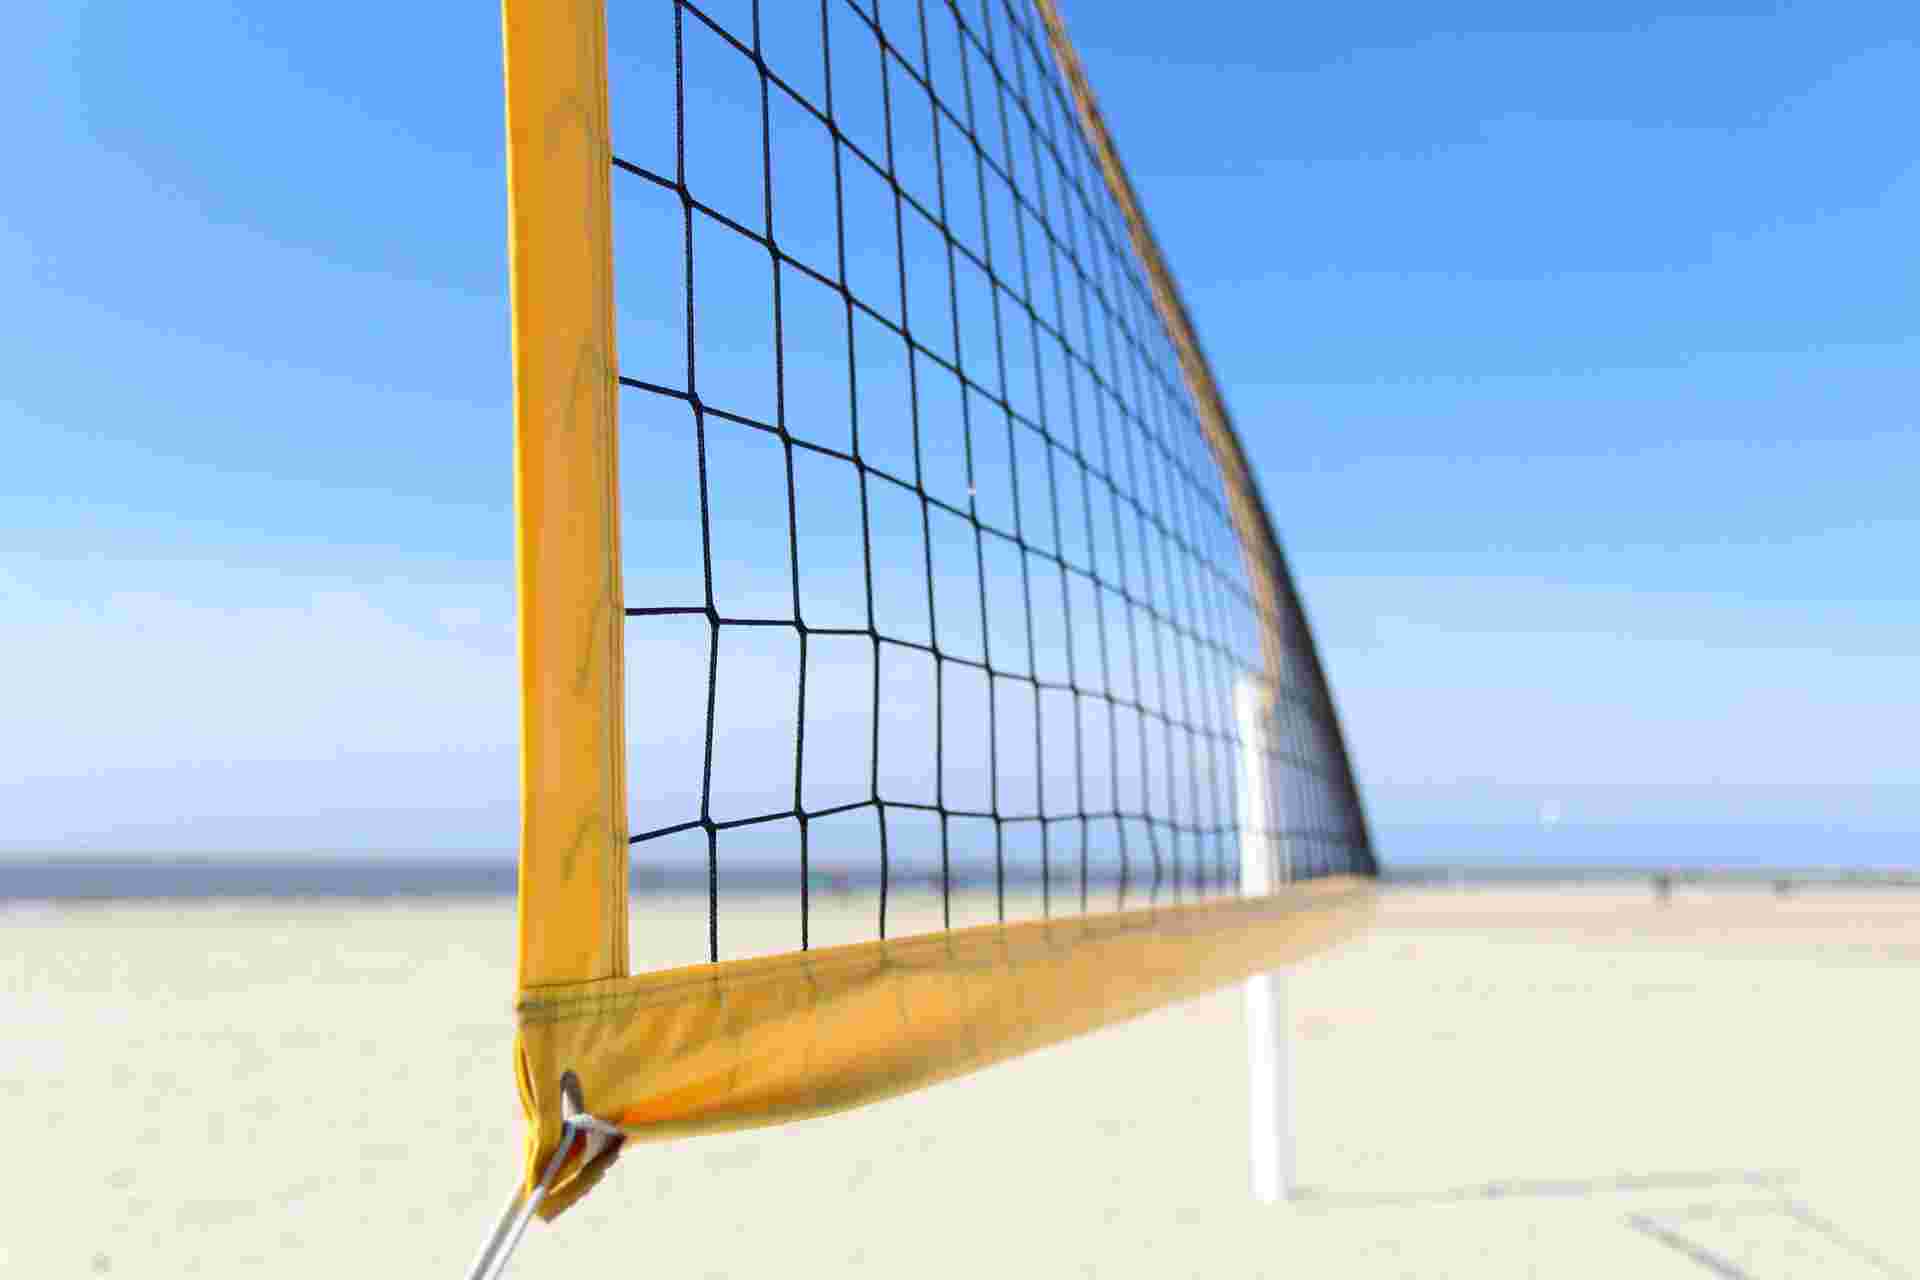 Rete da beach volley: dimensione, costo, com'è fatta